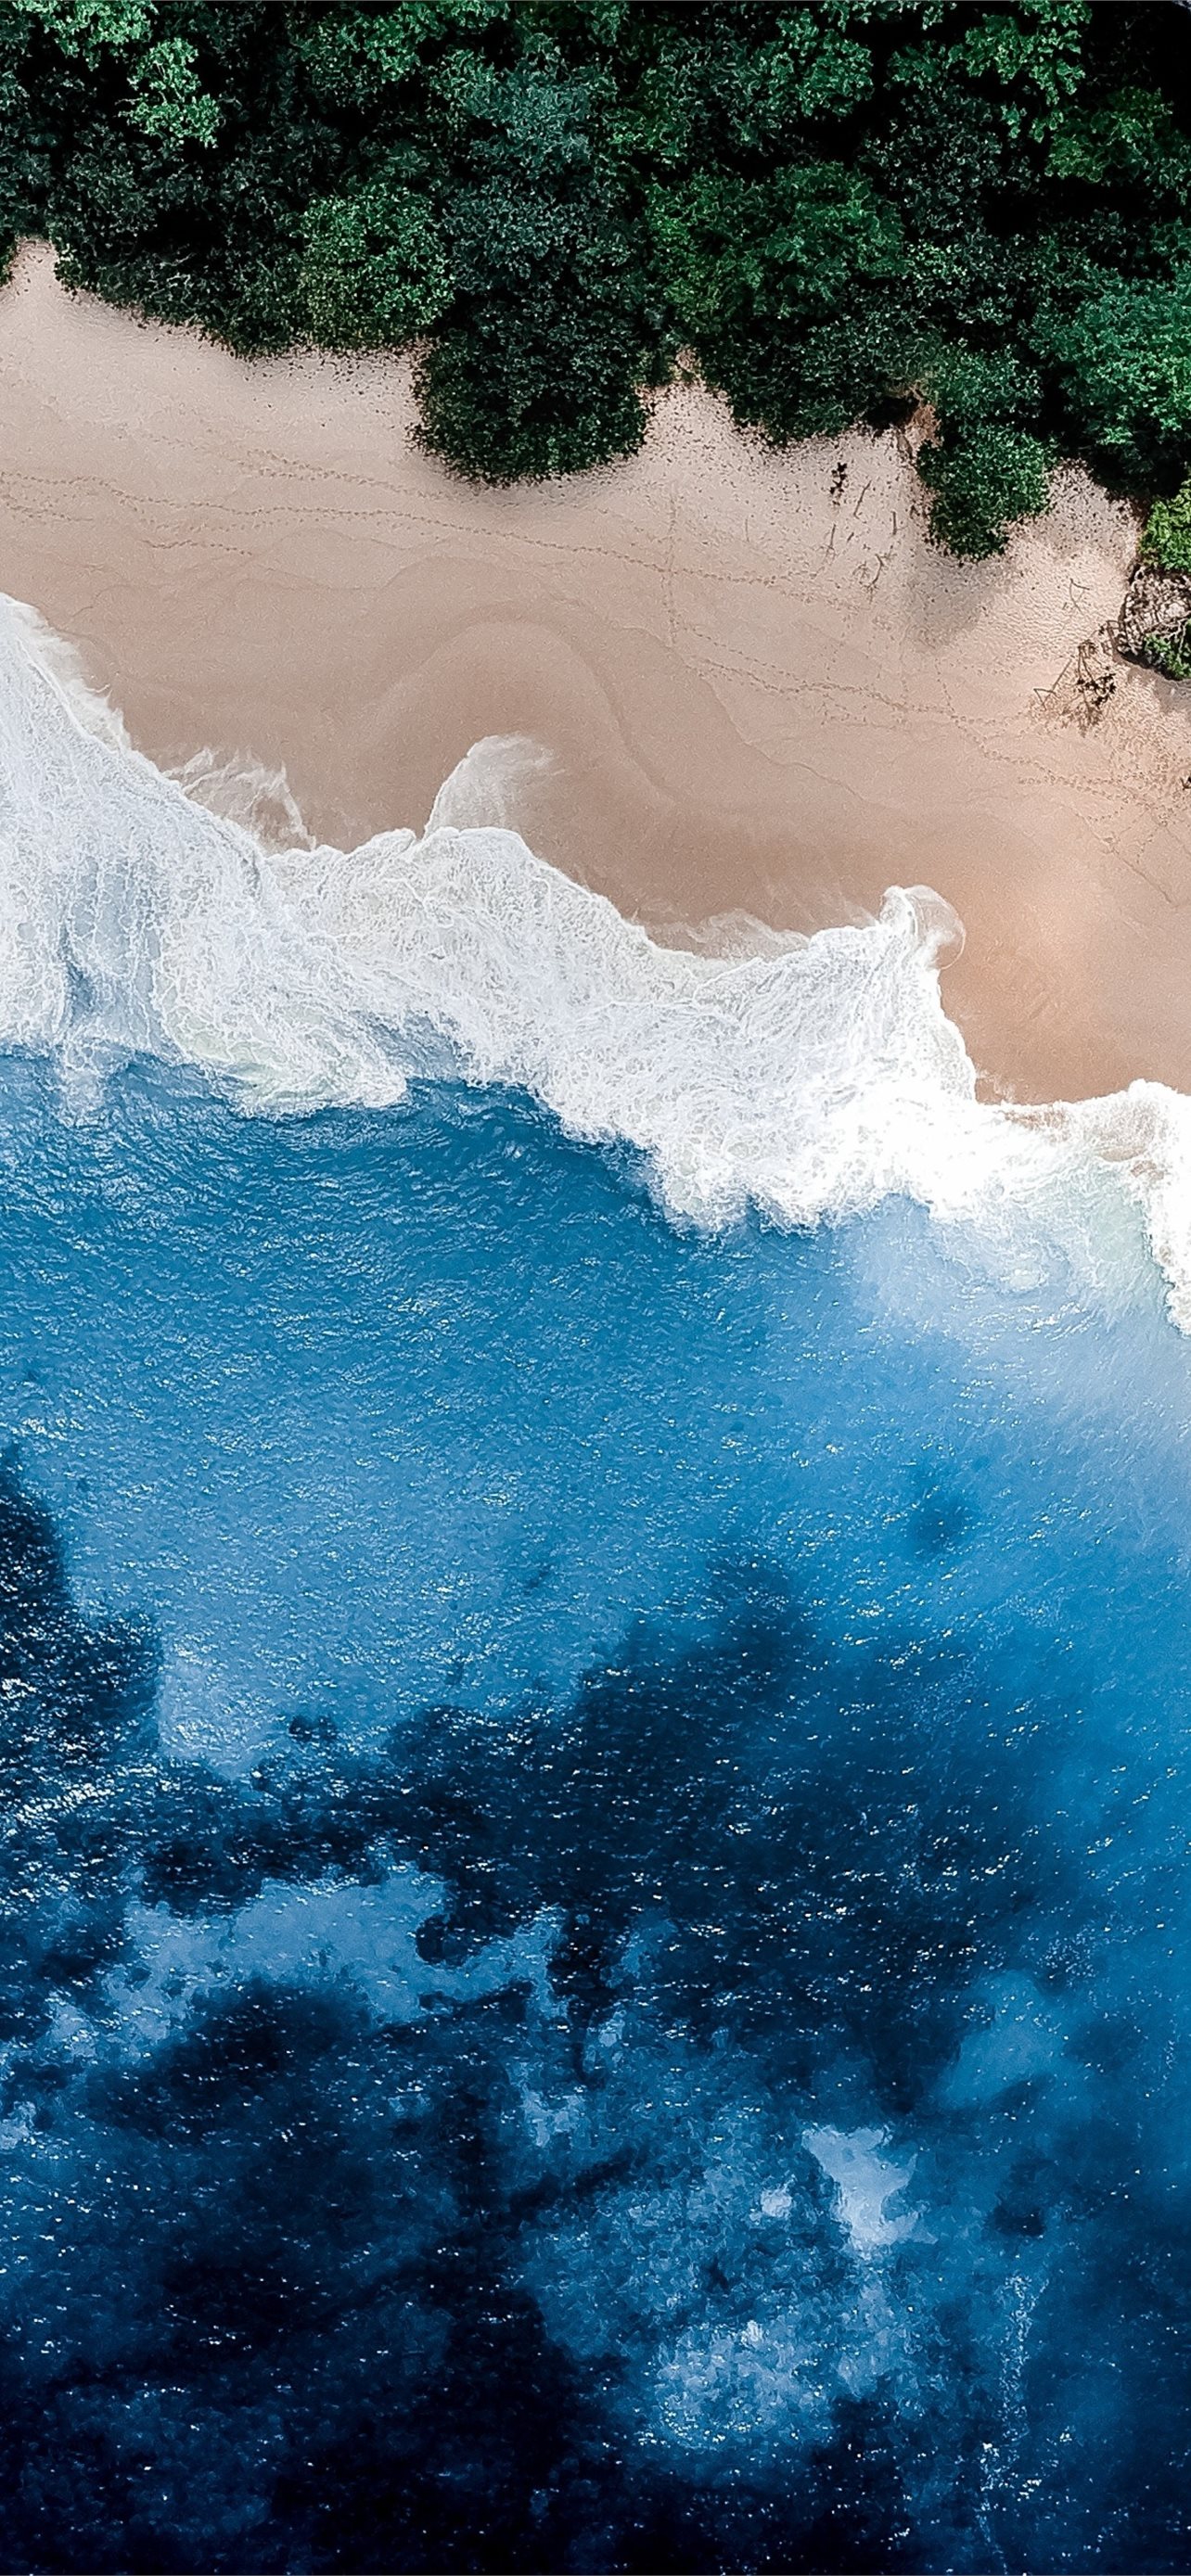 In the water  iPhone Wallpapers  Ocean wallpaper Water Ocean photography